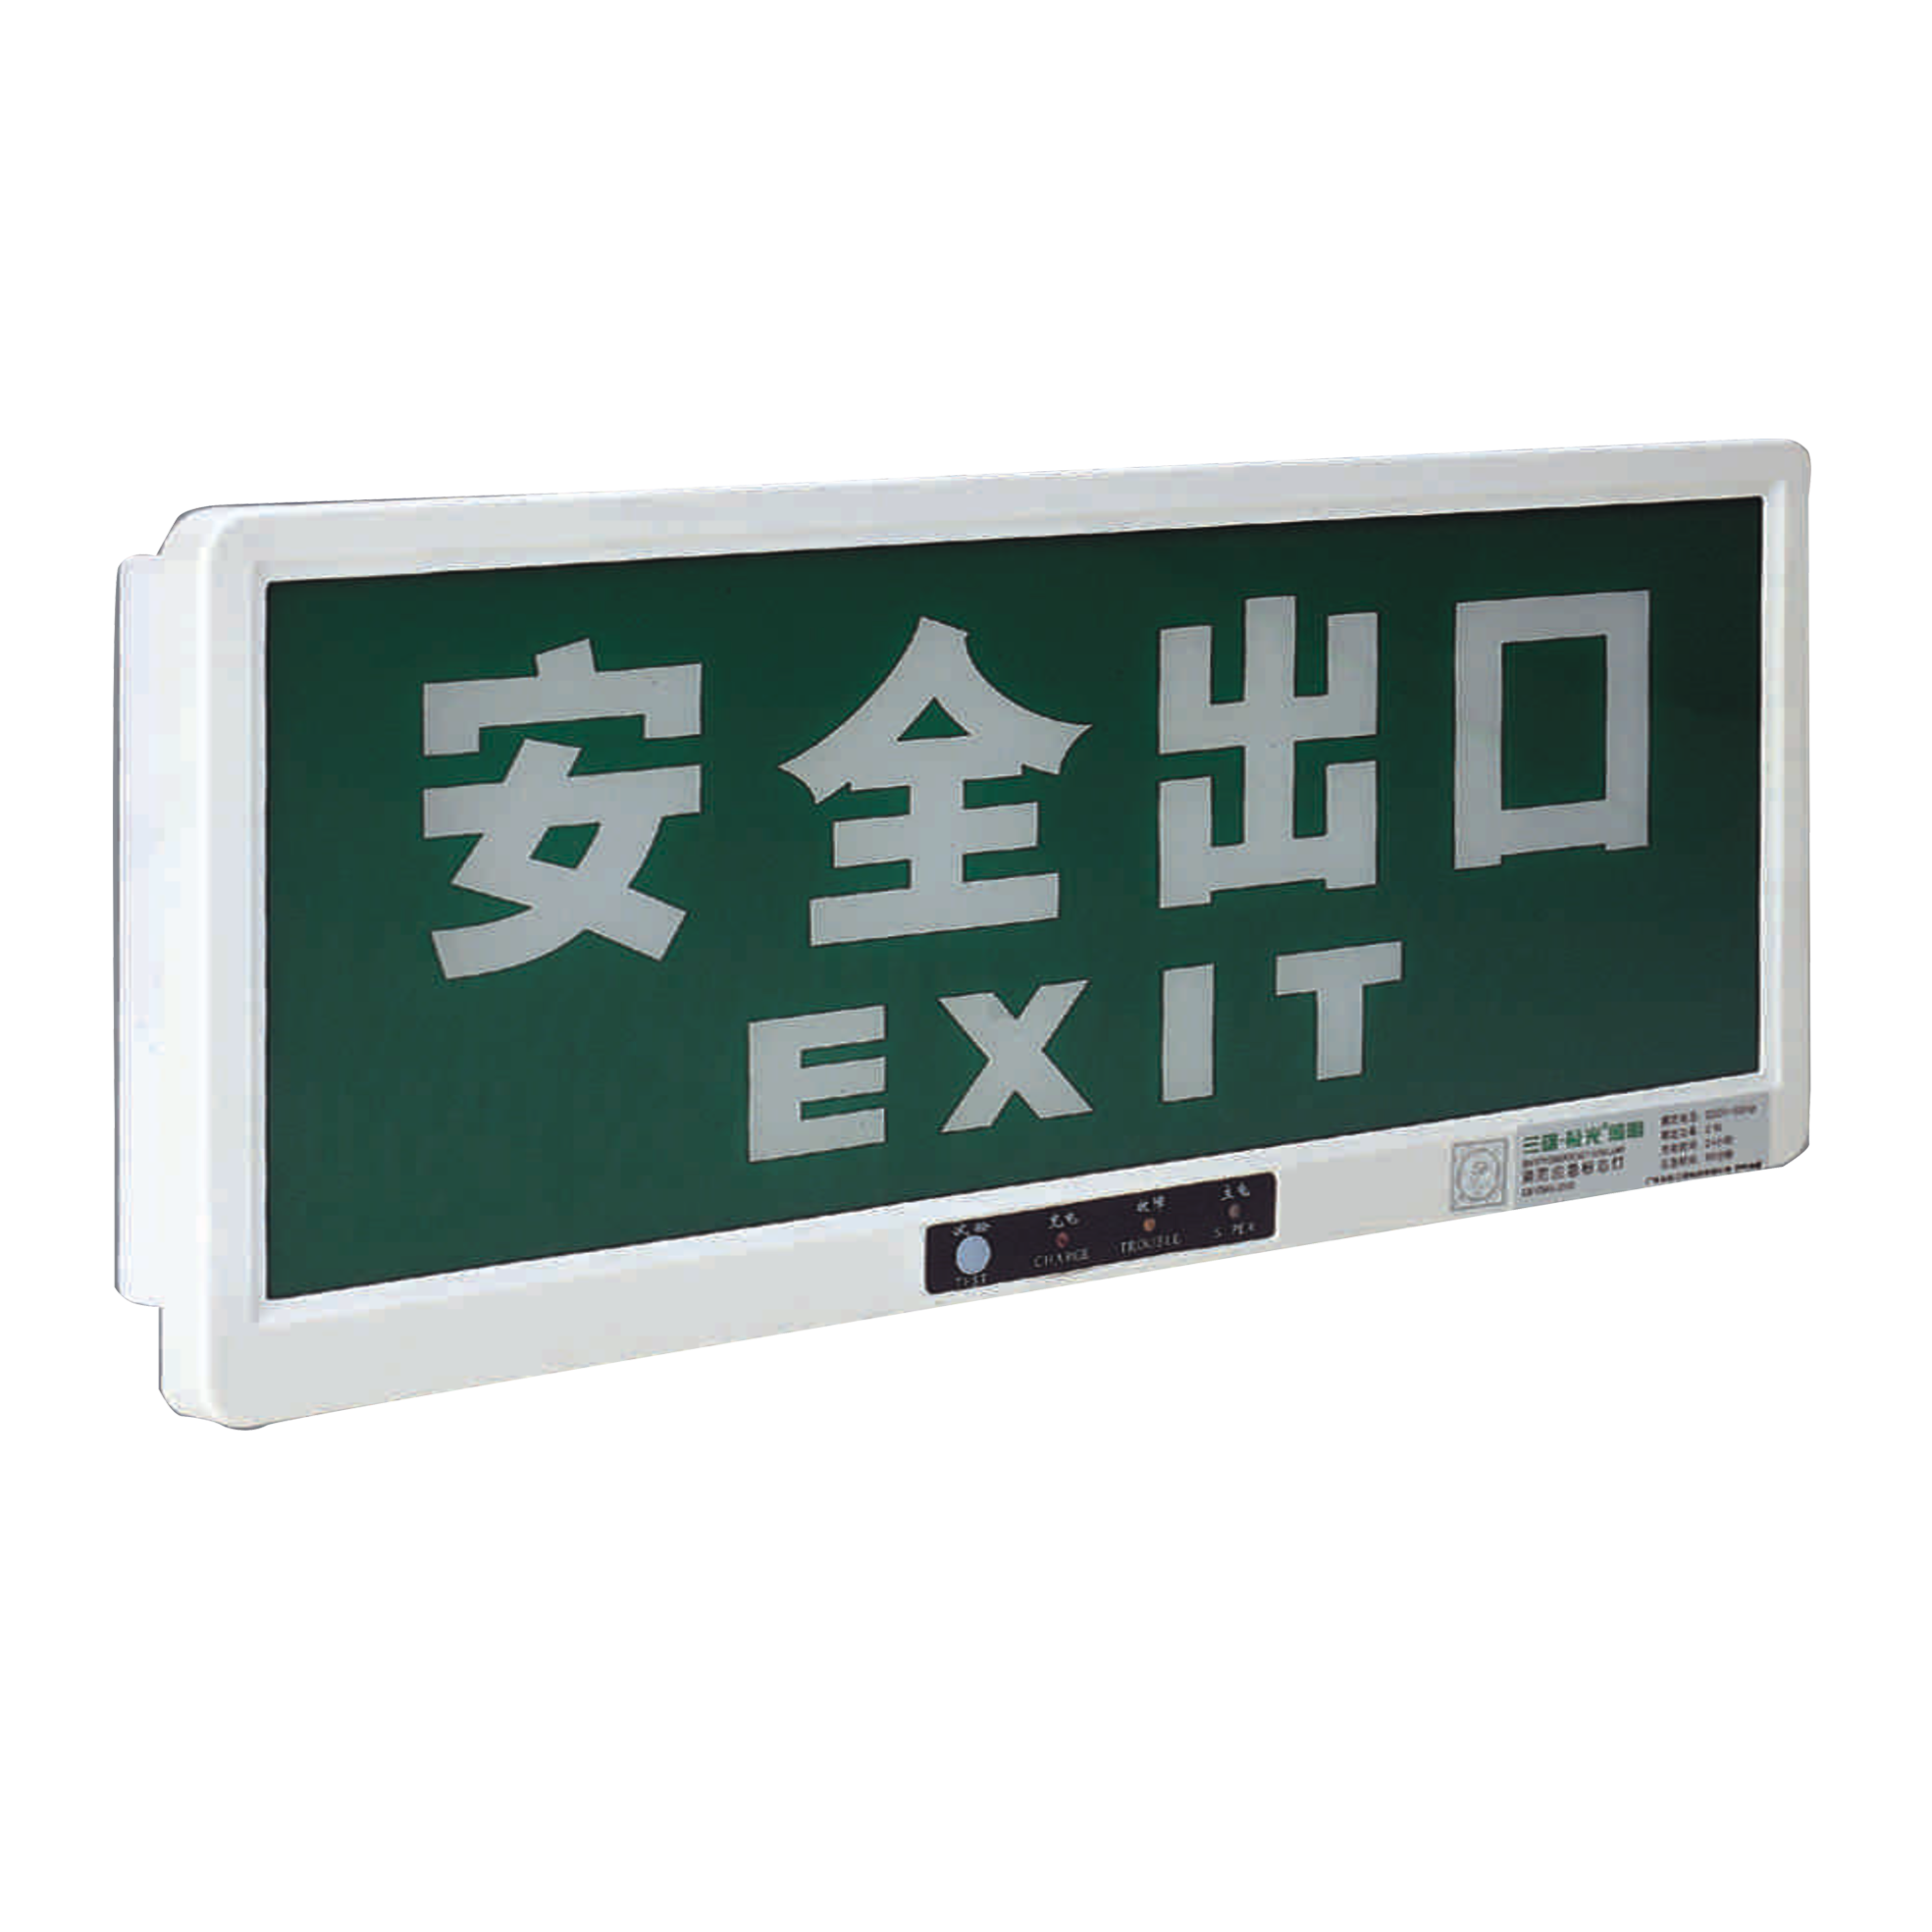 Exit sign (recessed)